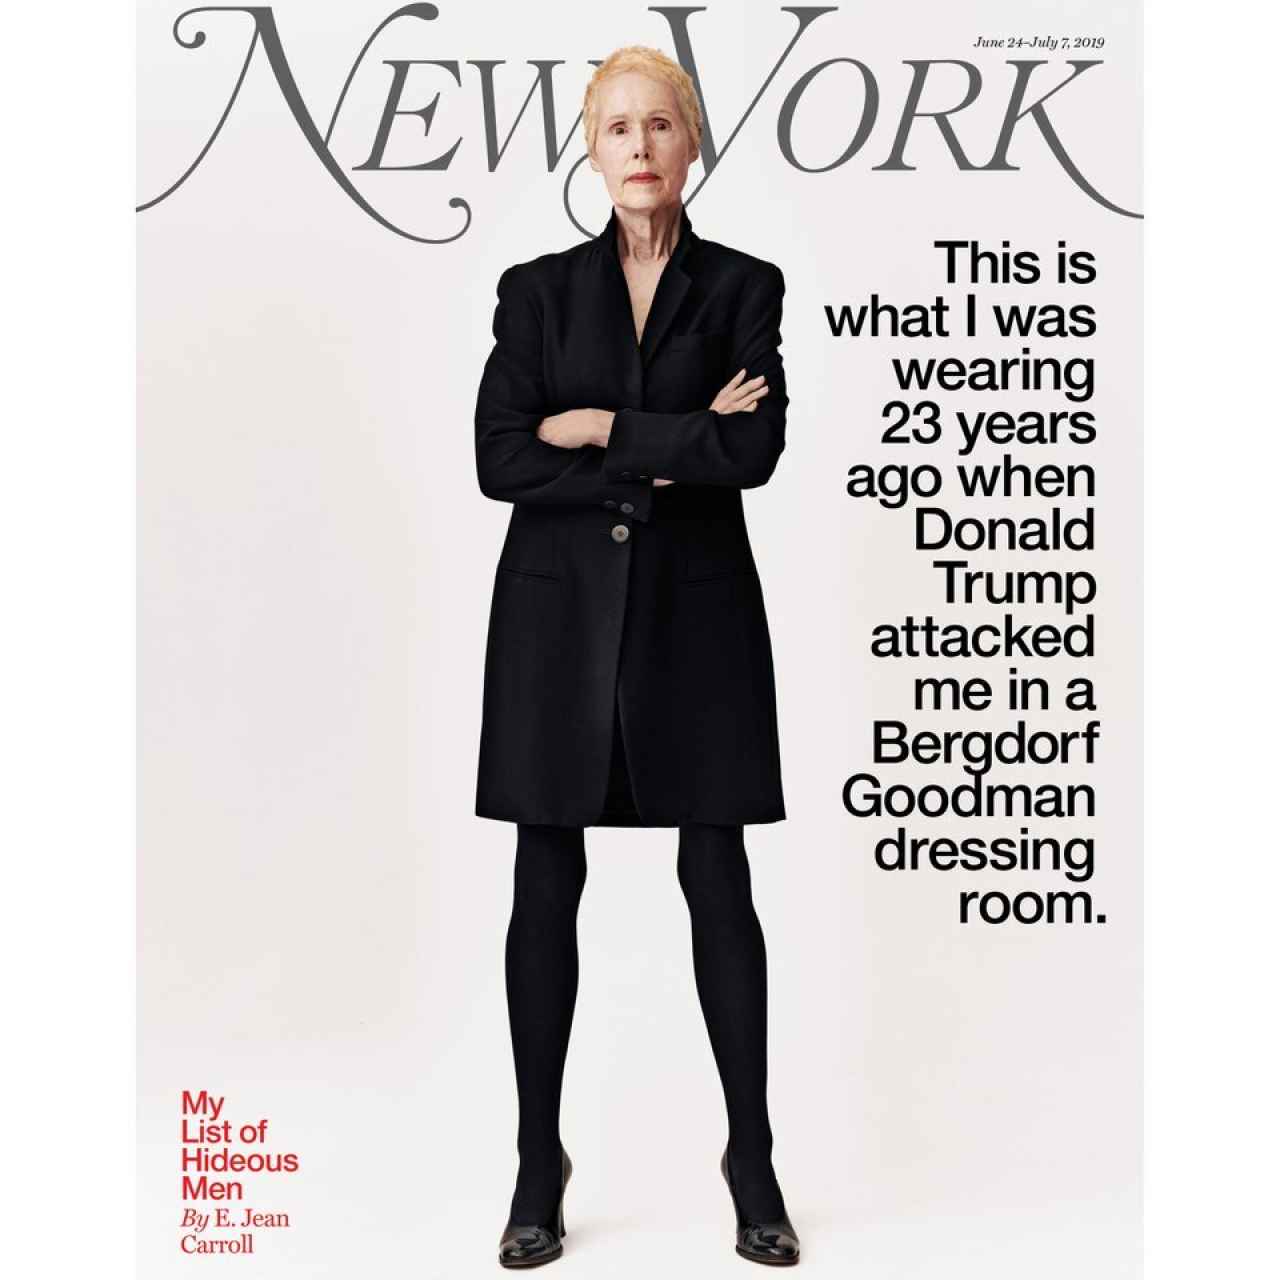 La portada de 'New York Magazine' con el testimonio de E. Jean Carroll.